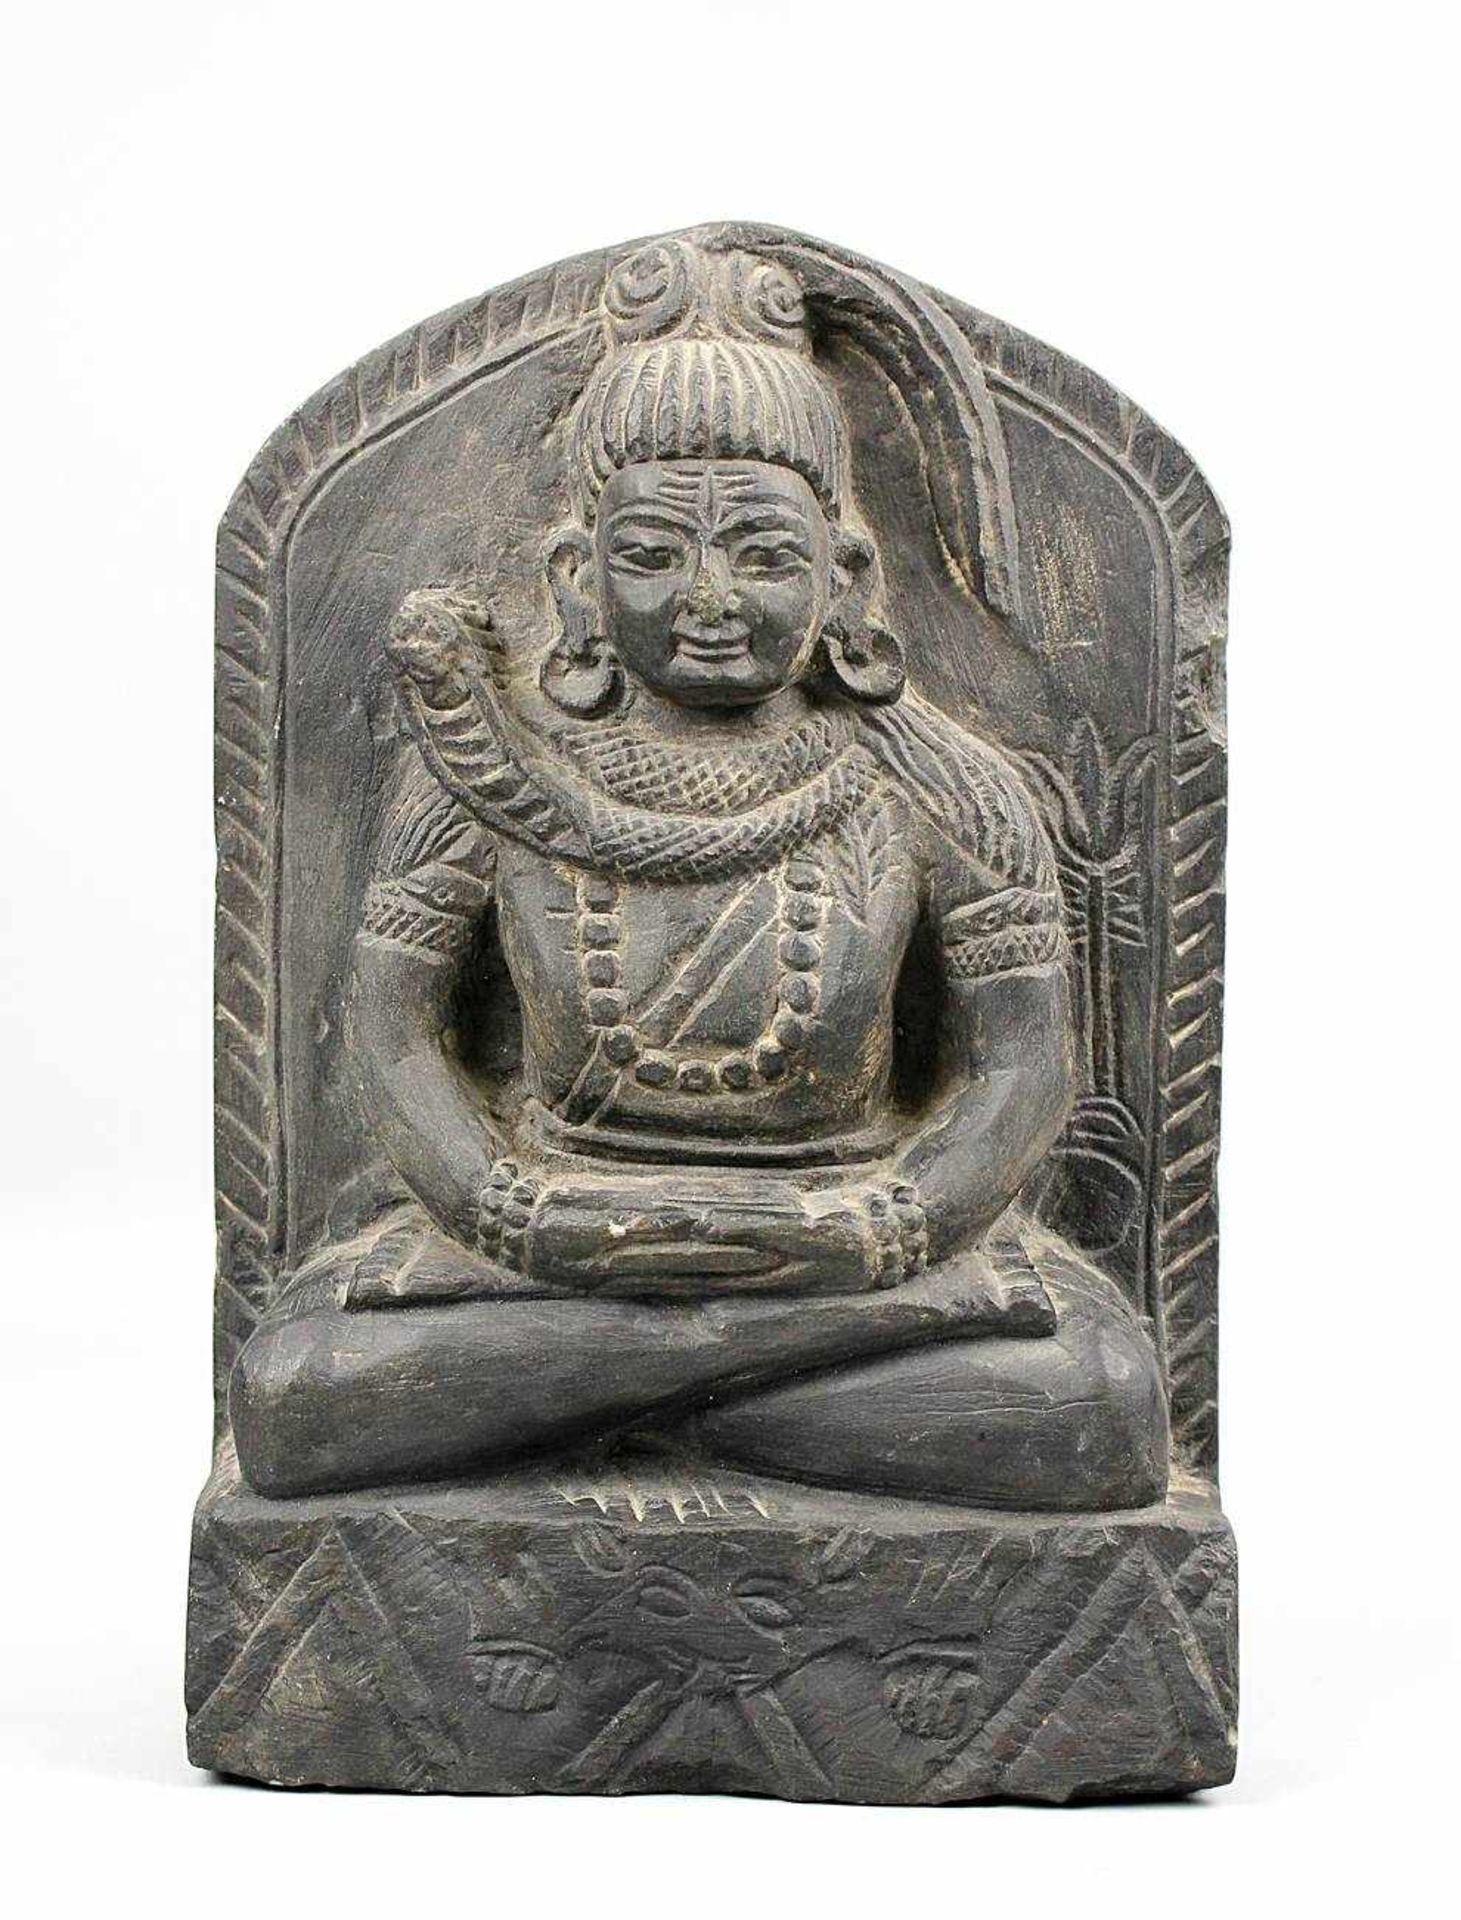 Buddha Schieferrelief, Kambodscha. Aus einem Stück geschlagen. Höhe 23cm, Breite 15,5cm. 549-025